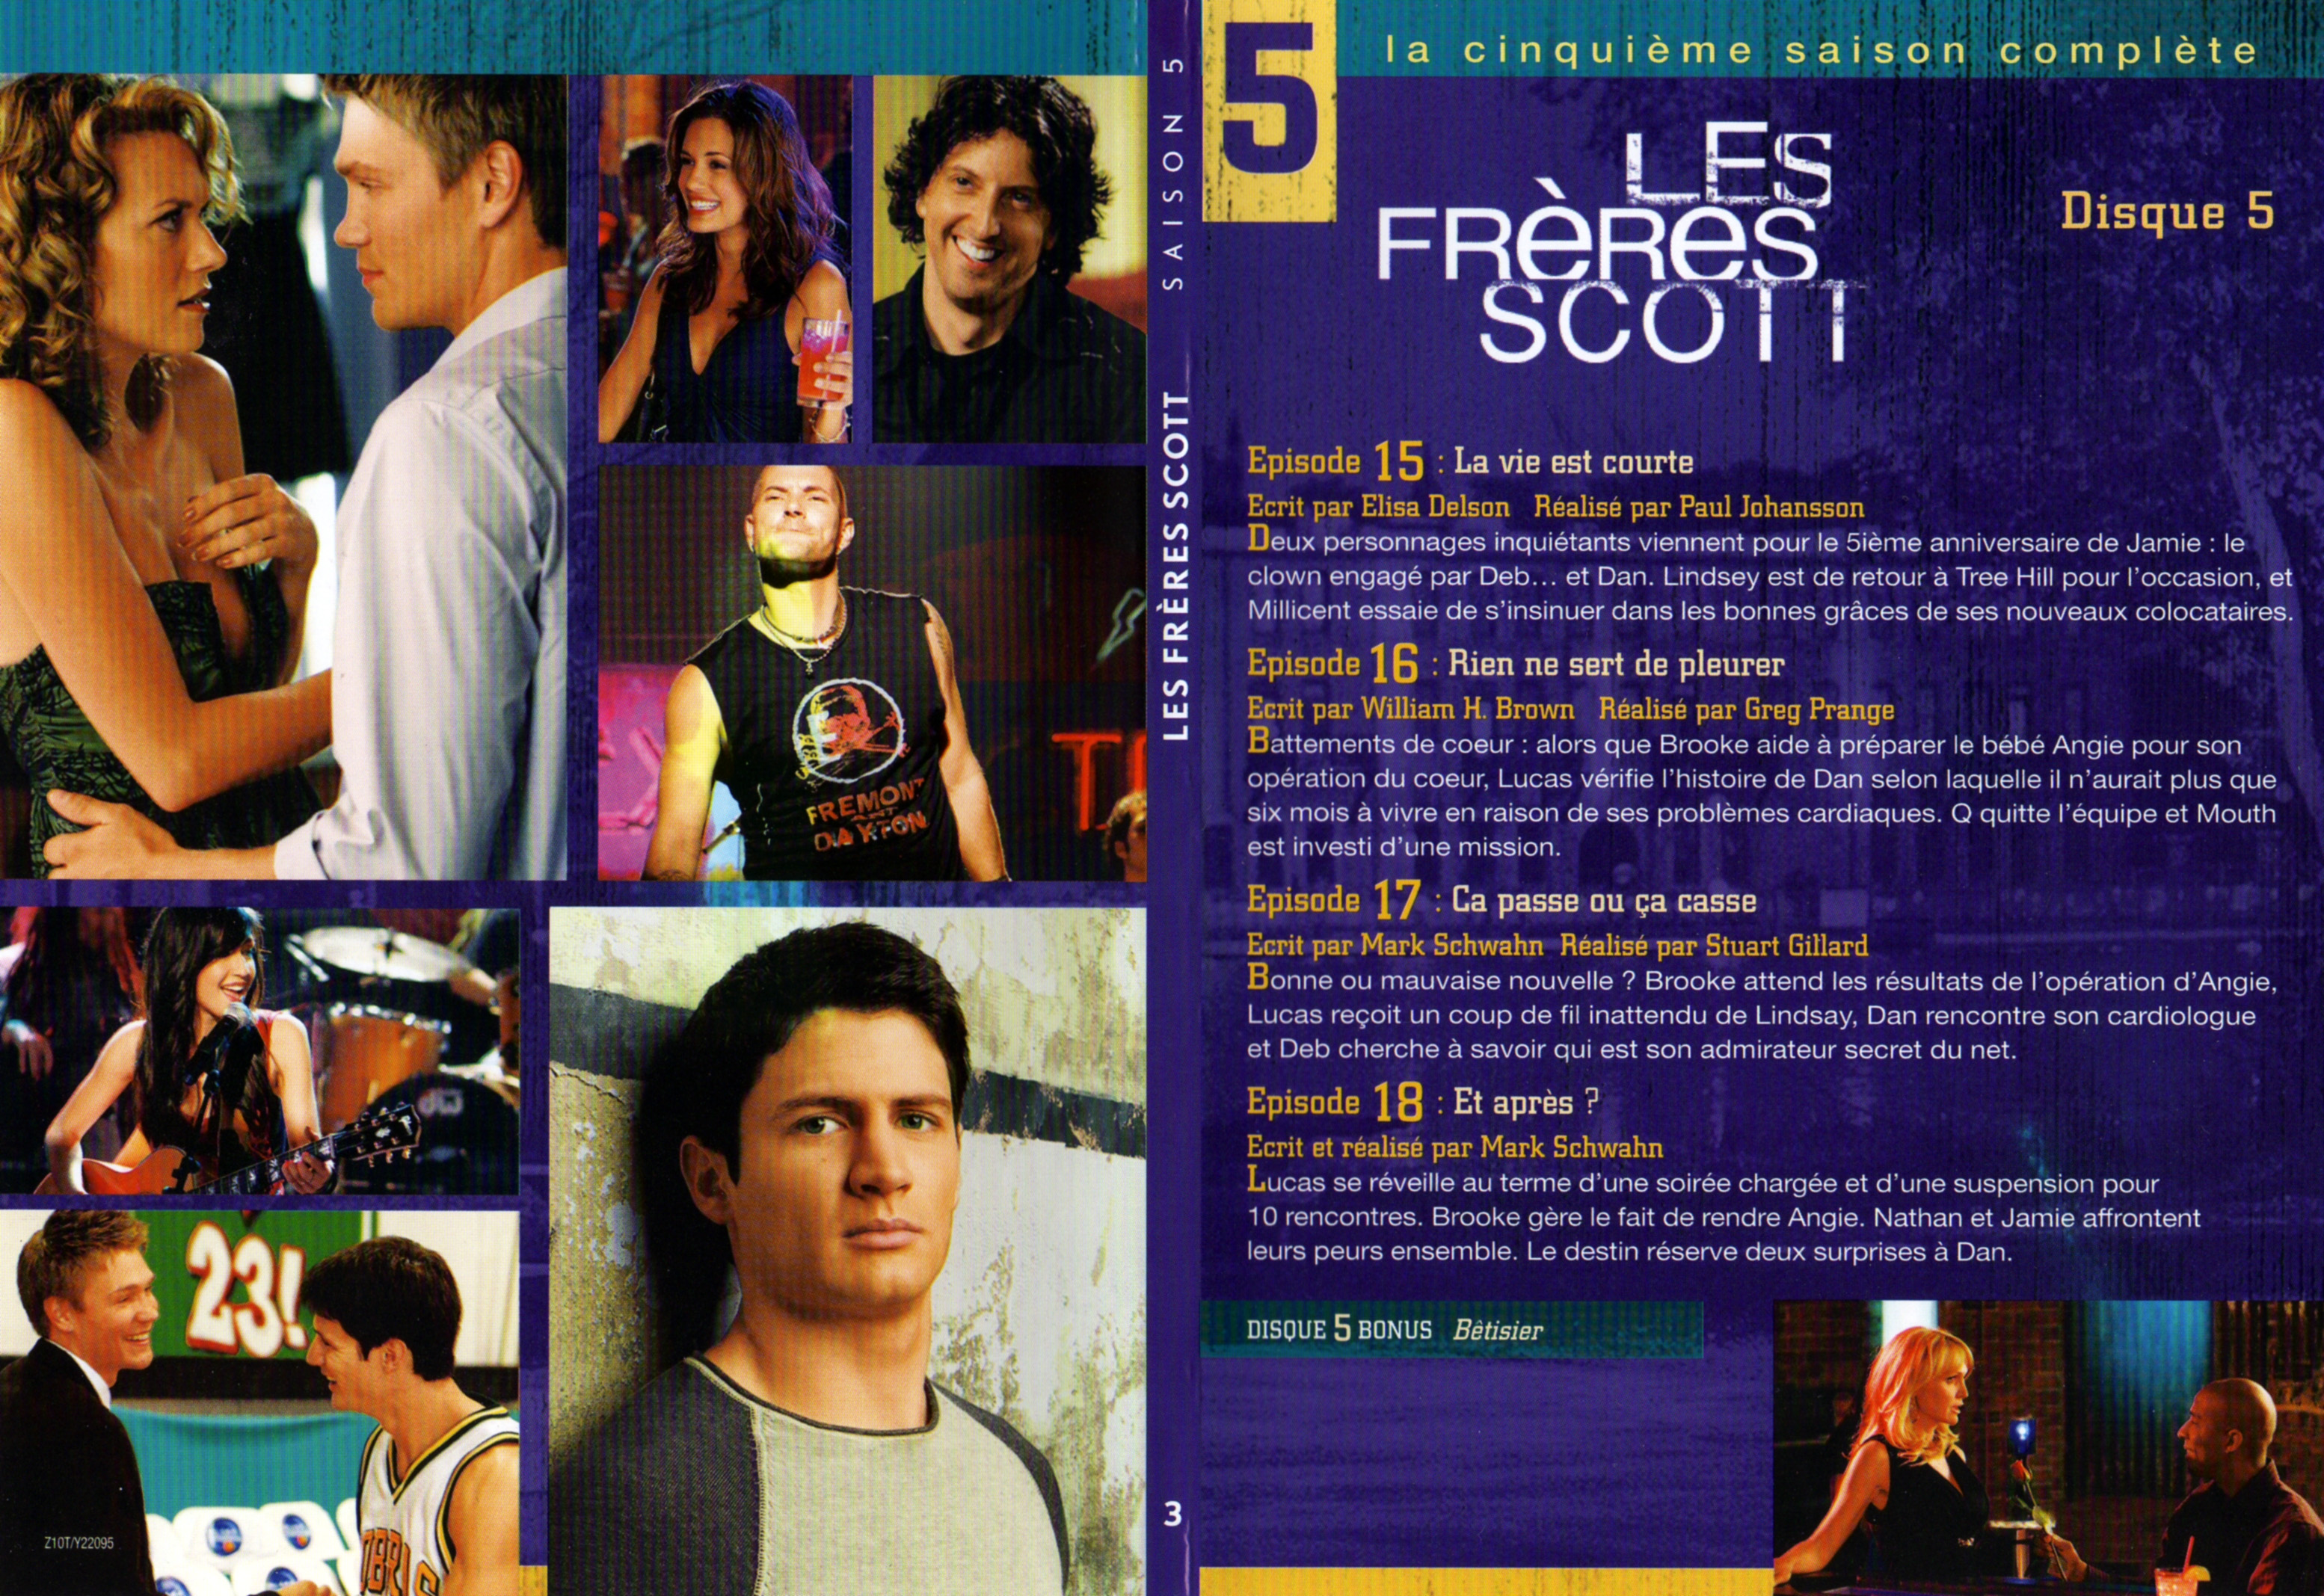 Jaquette DVD Les frres Scott Saison 5 DVD 3